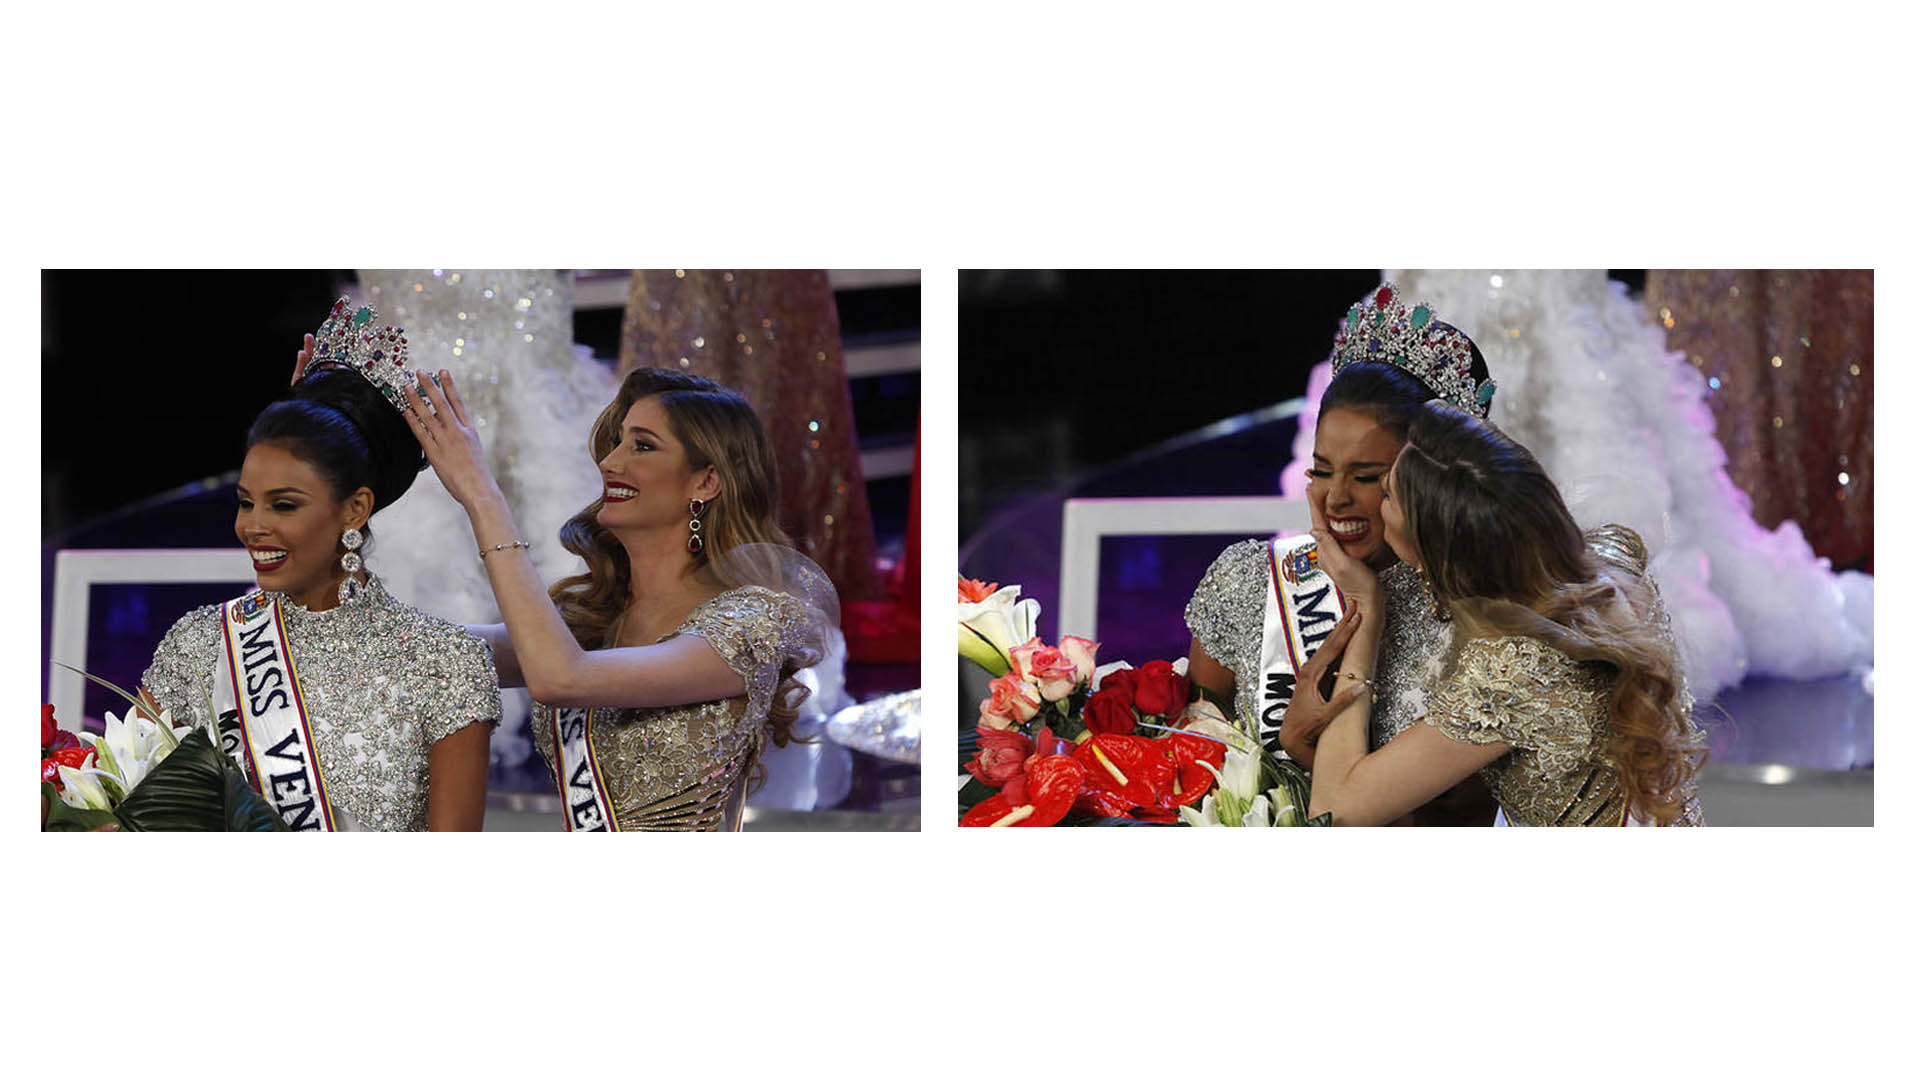 La ingeniera de 23 años se coronó como Miss Venezuela 2016